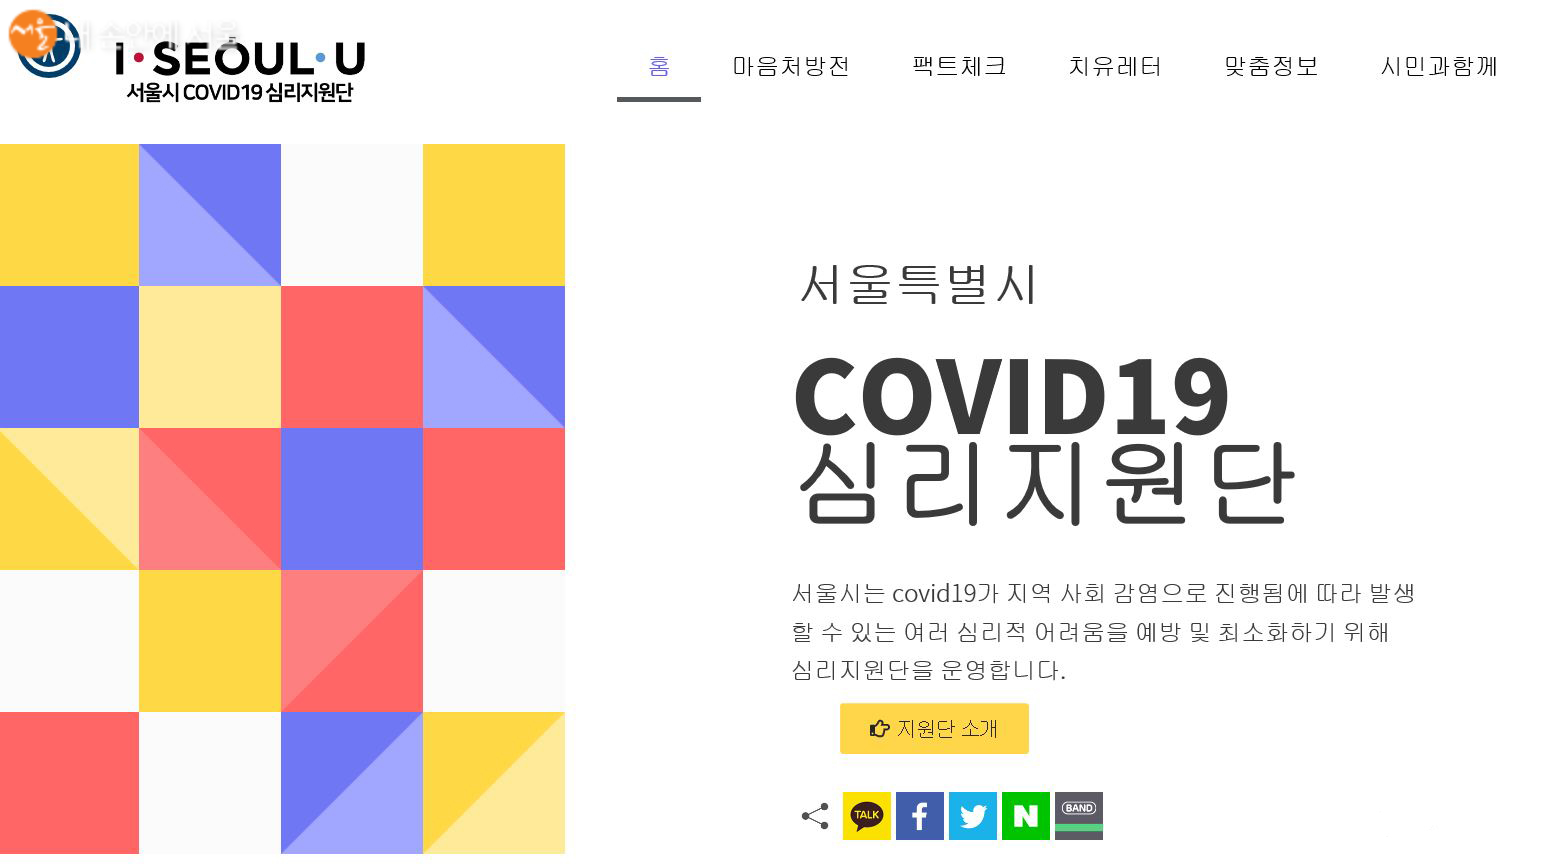 서울특별시 COVID19 심리지원단 (사진 클릭 시 홈페이지 이동)